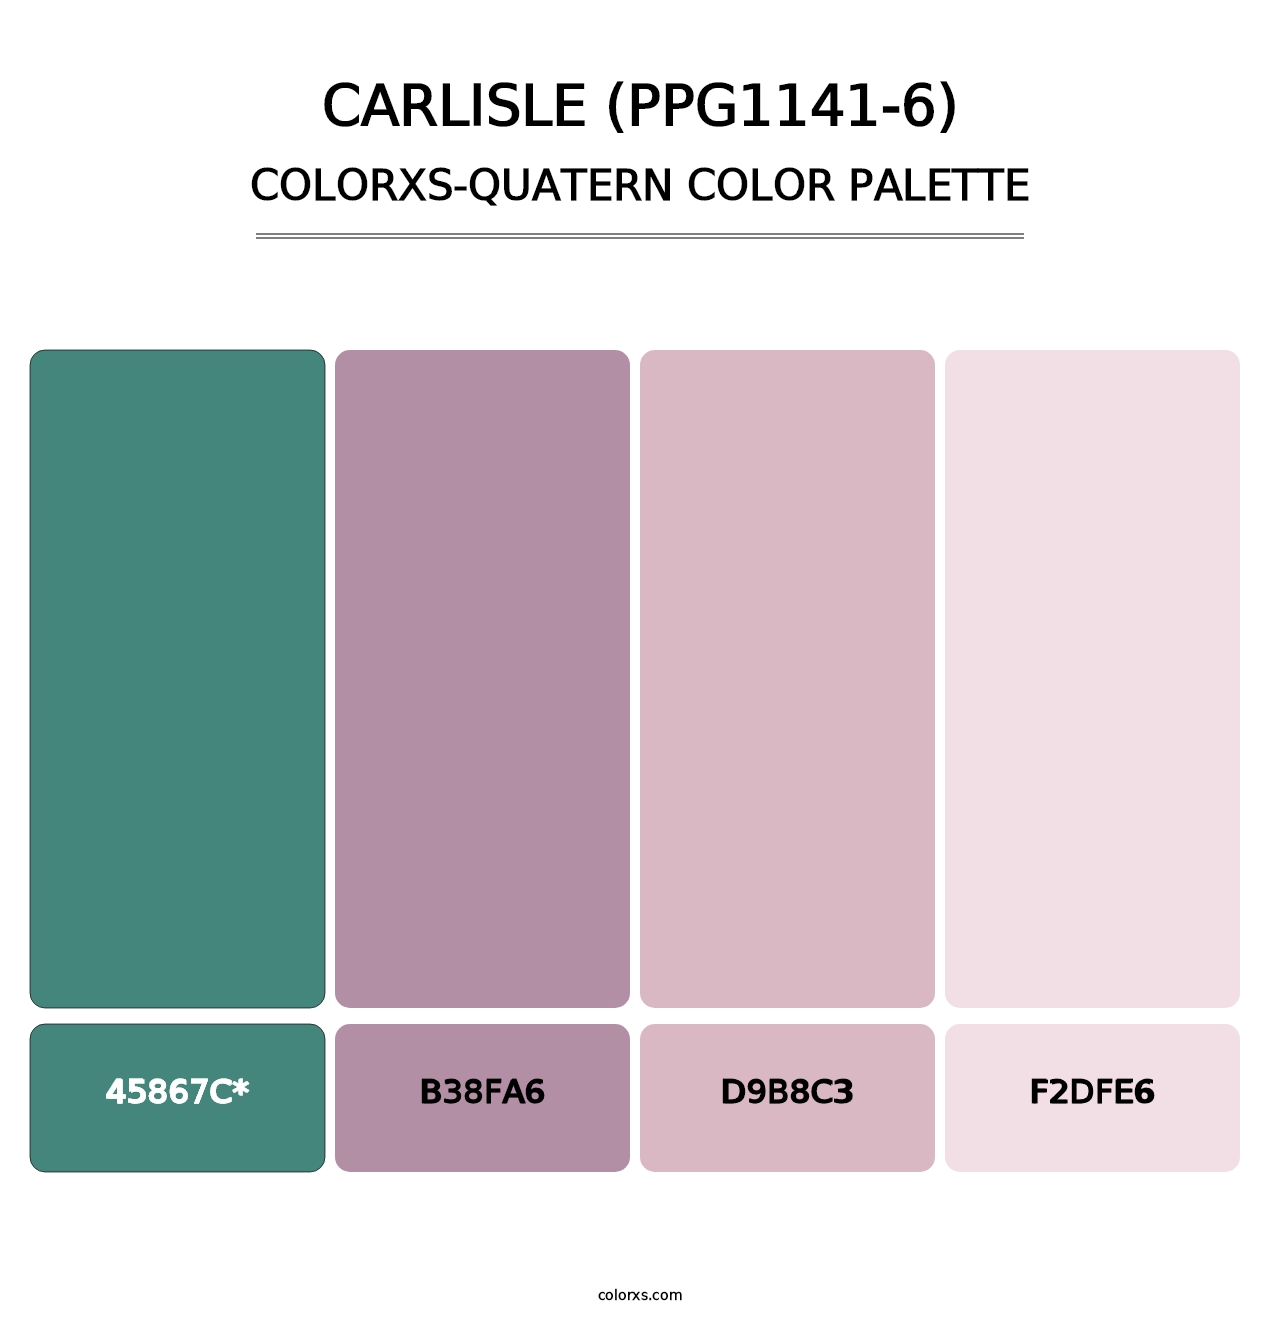 Carlisle (PPG1141-6) - Colorxs Quatern Palette